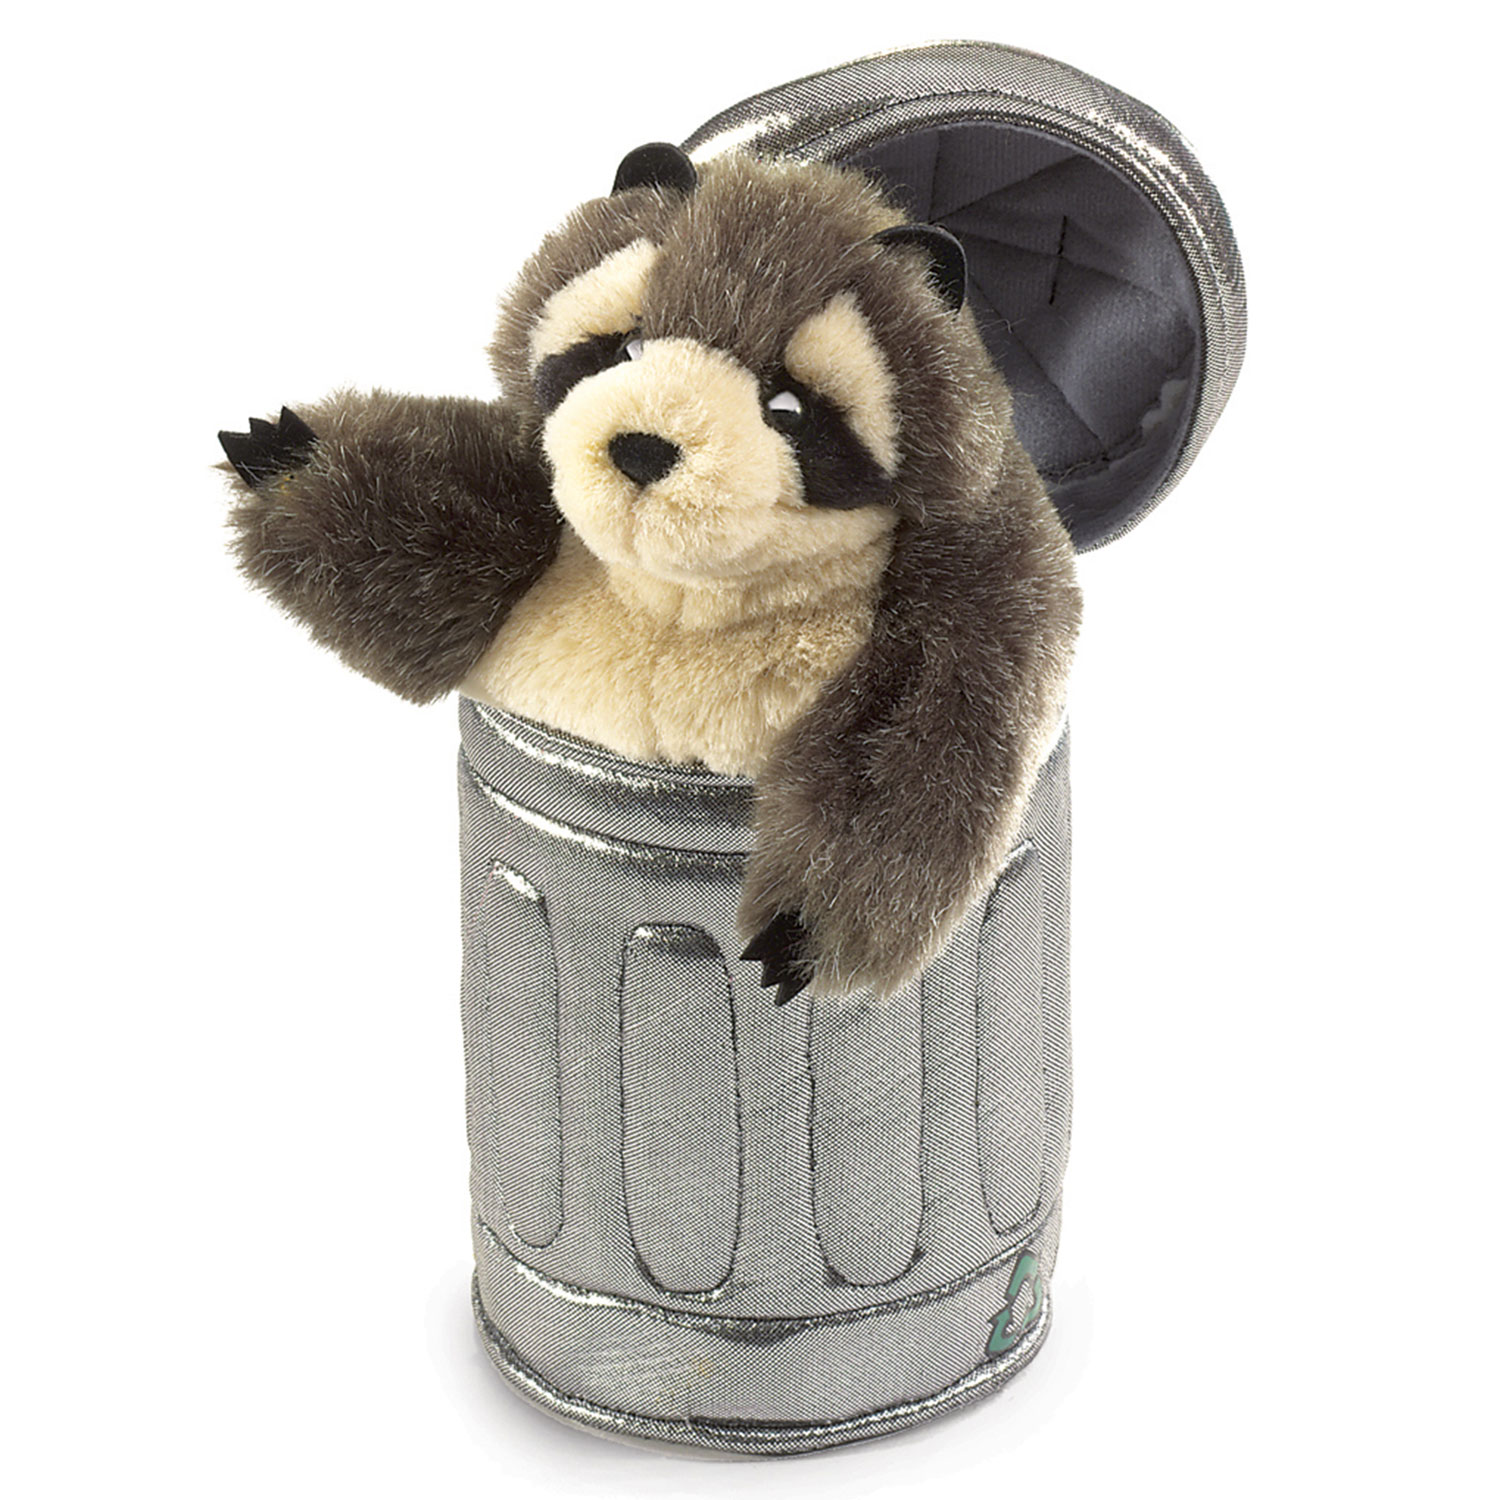 Waschbär im Mülleimer / Raccoon in Garbage Can